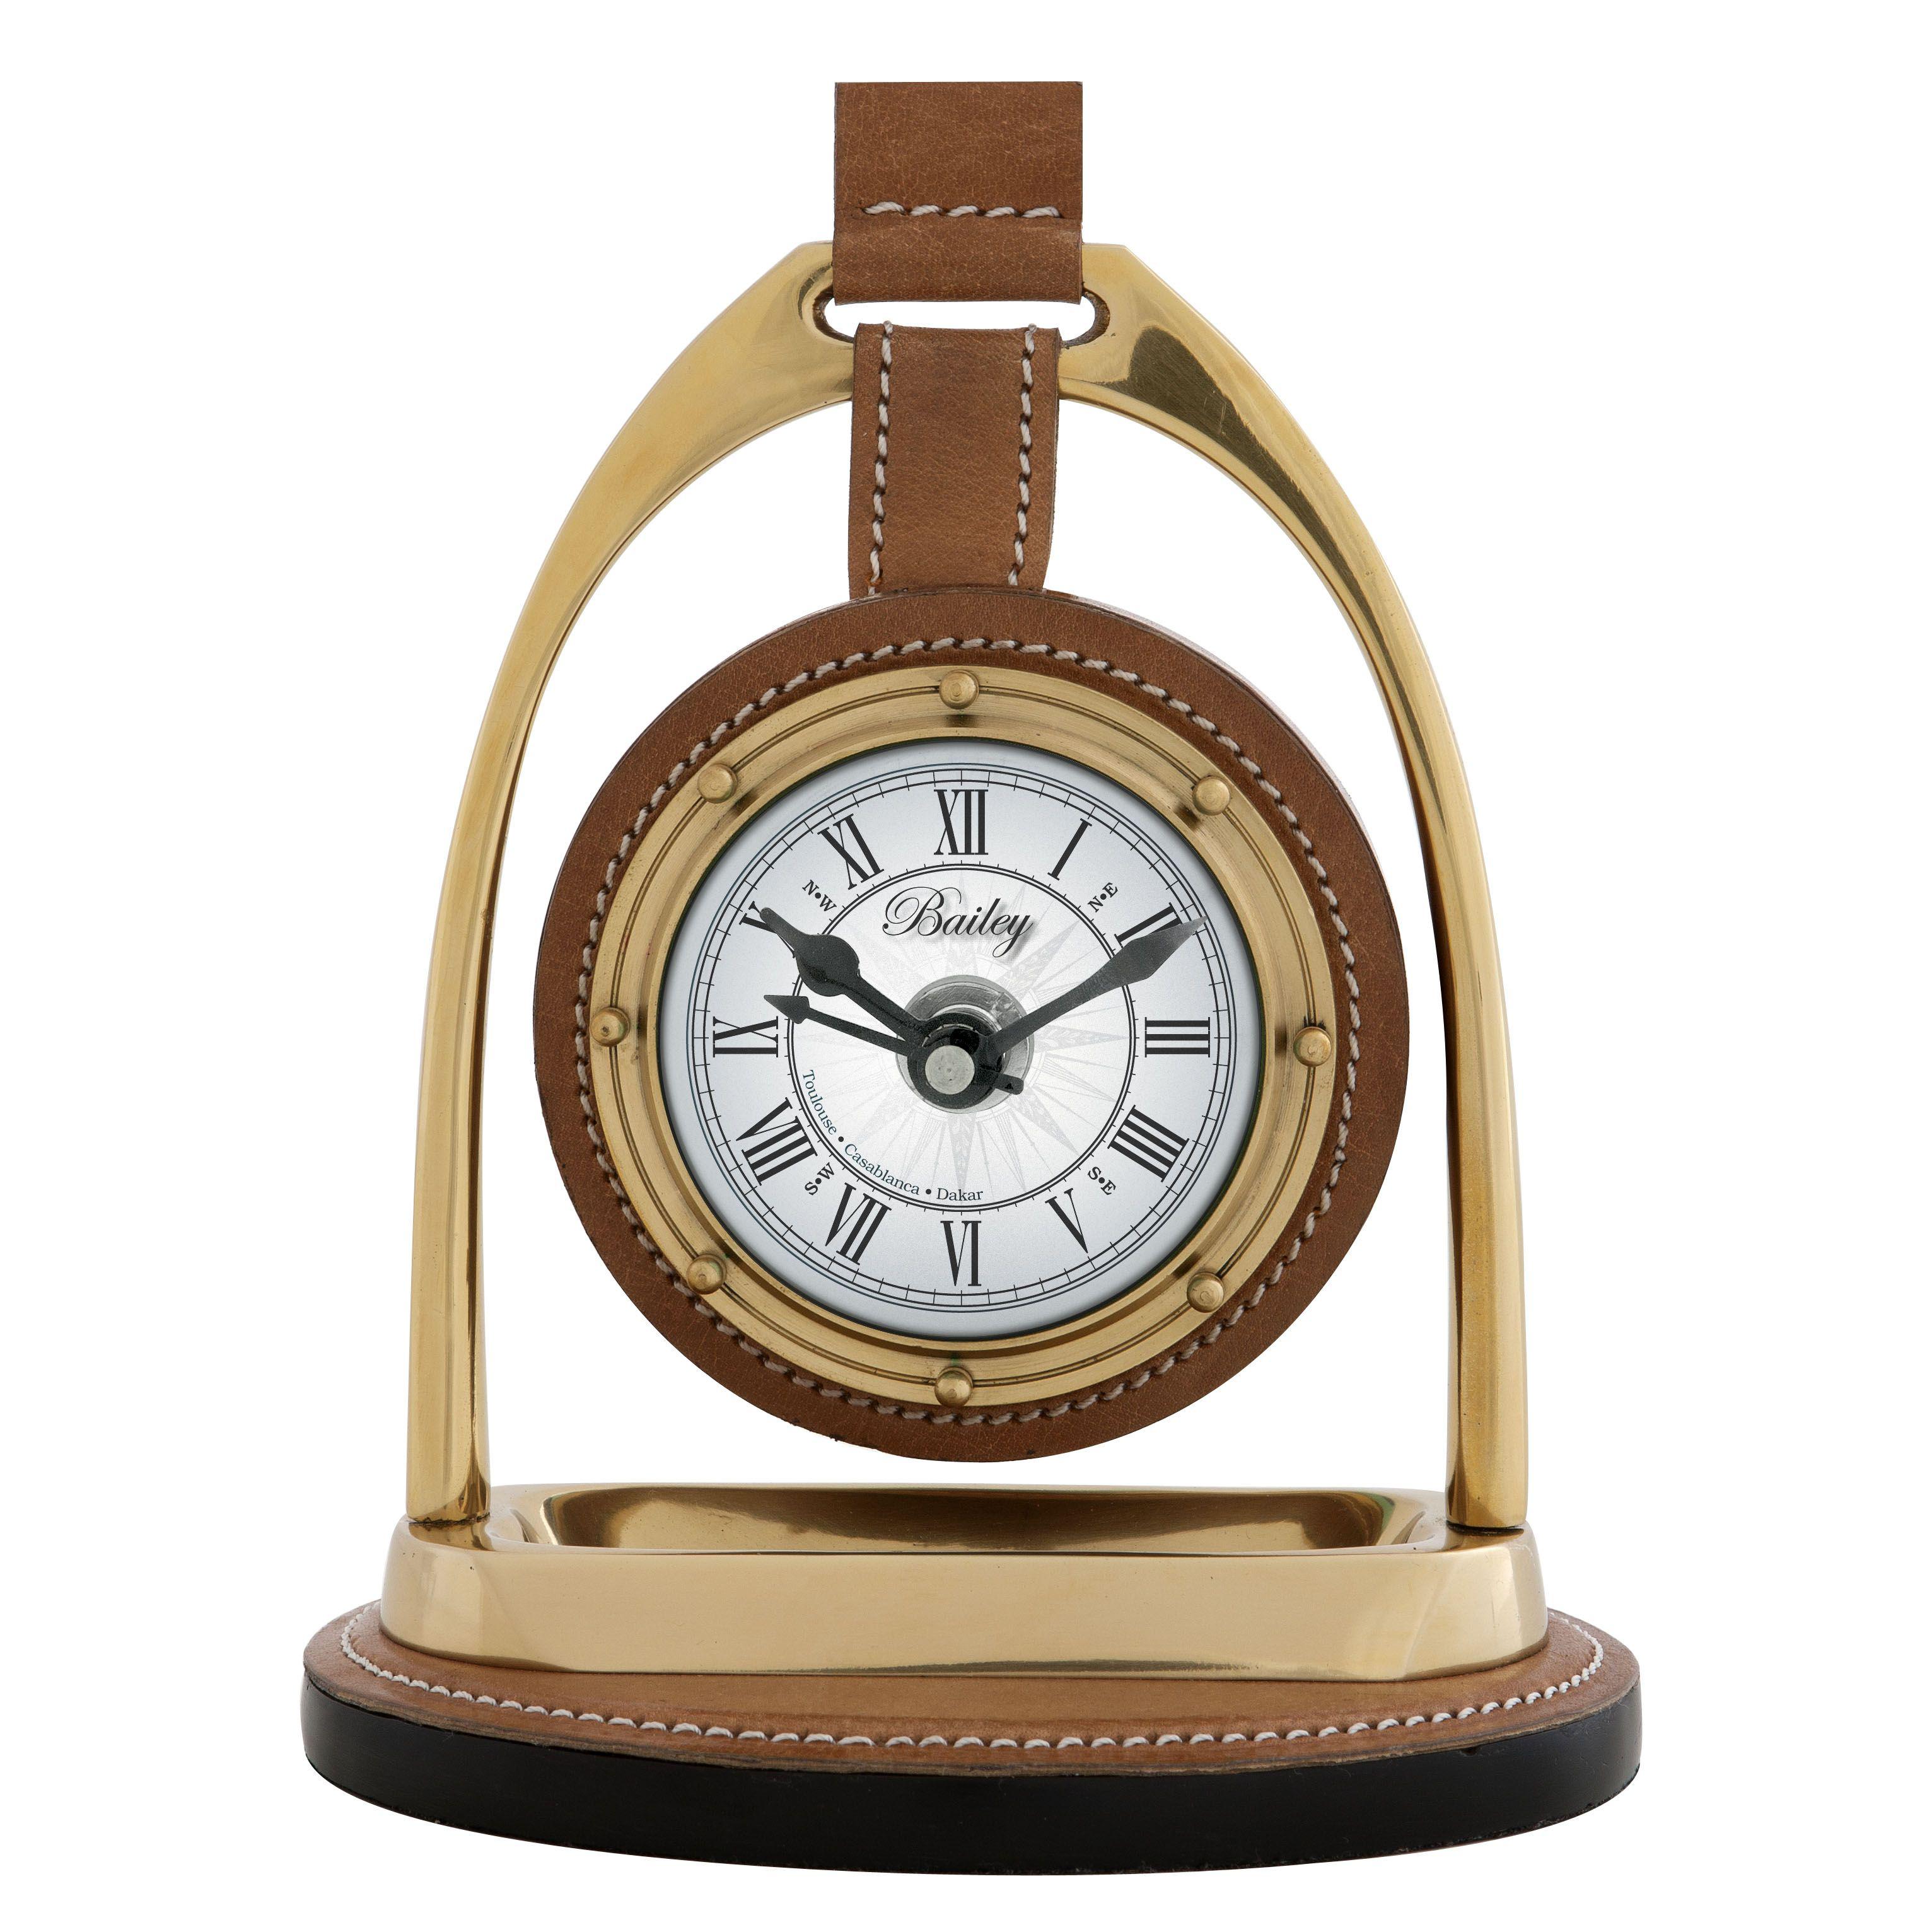 Купить Часы Clock Bailey Equestrian в интернет-магазине roooms.ru